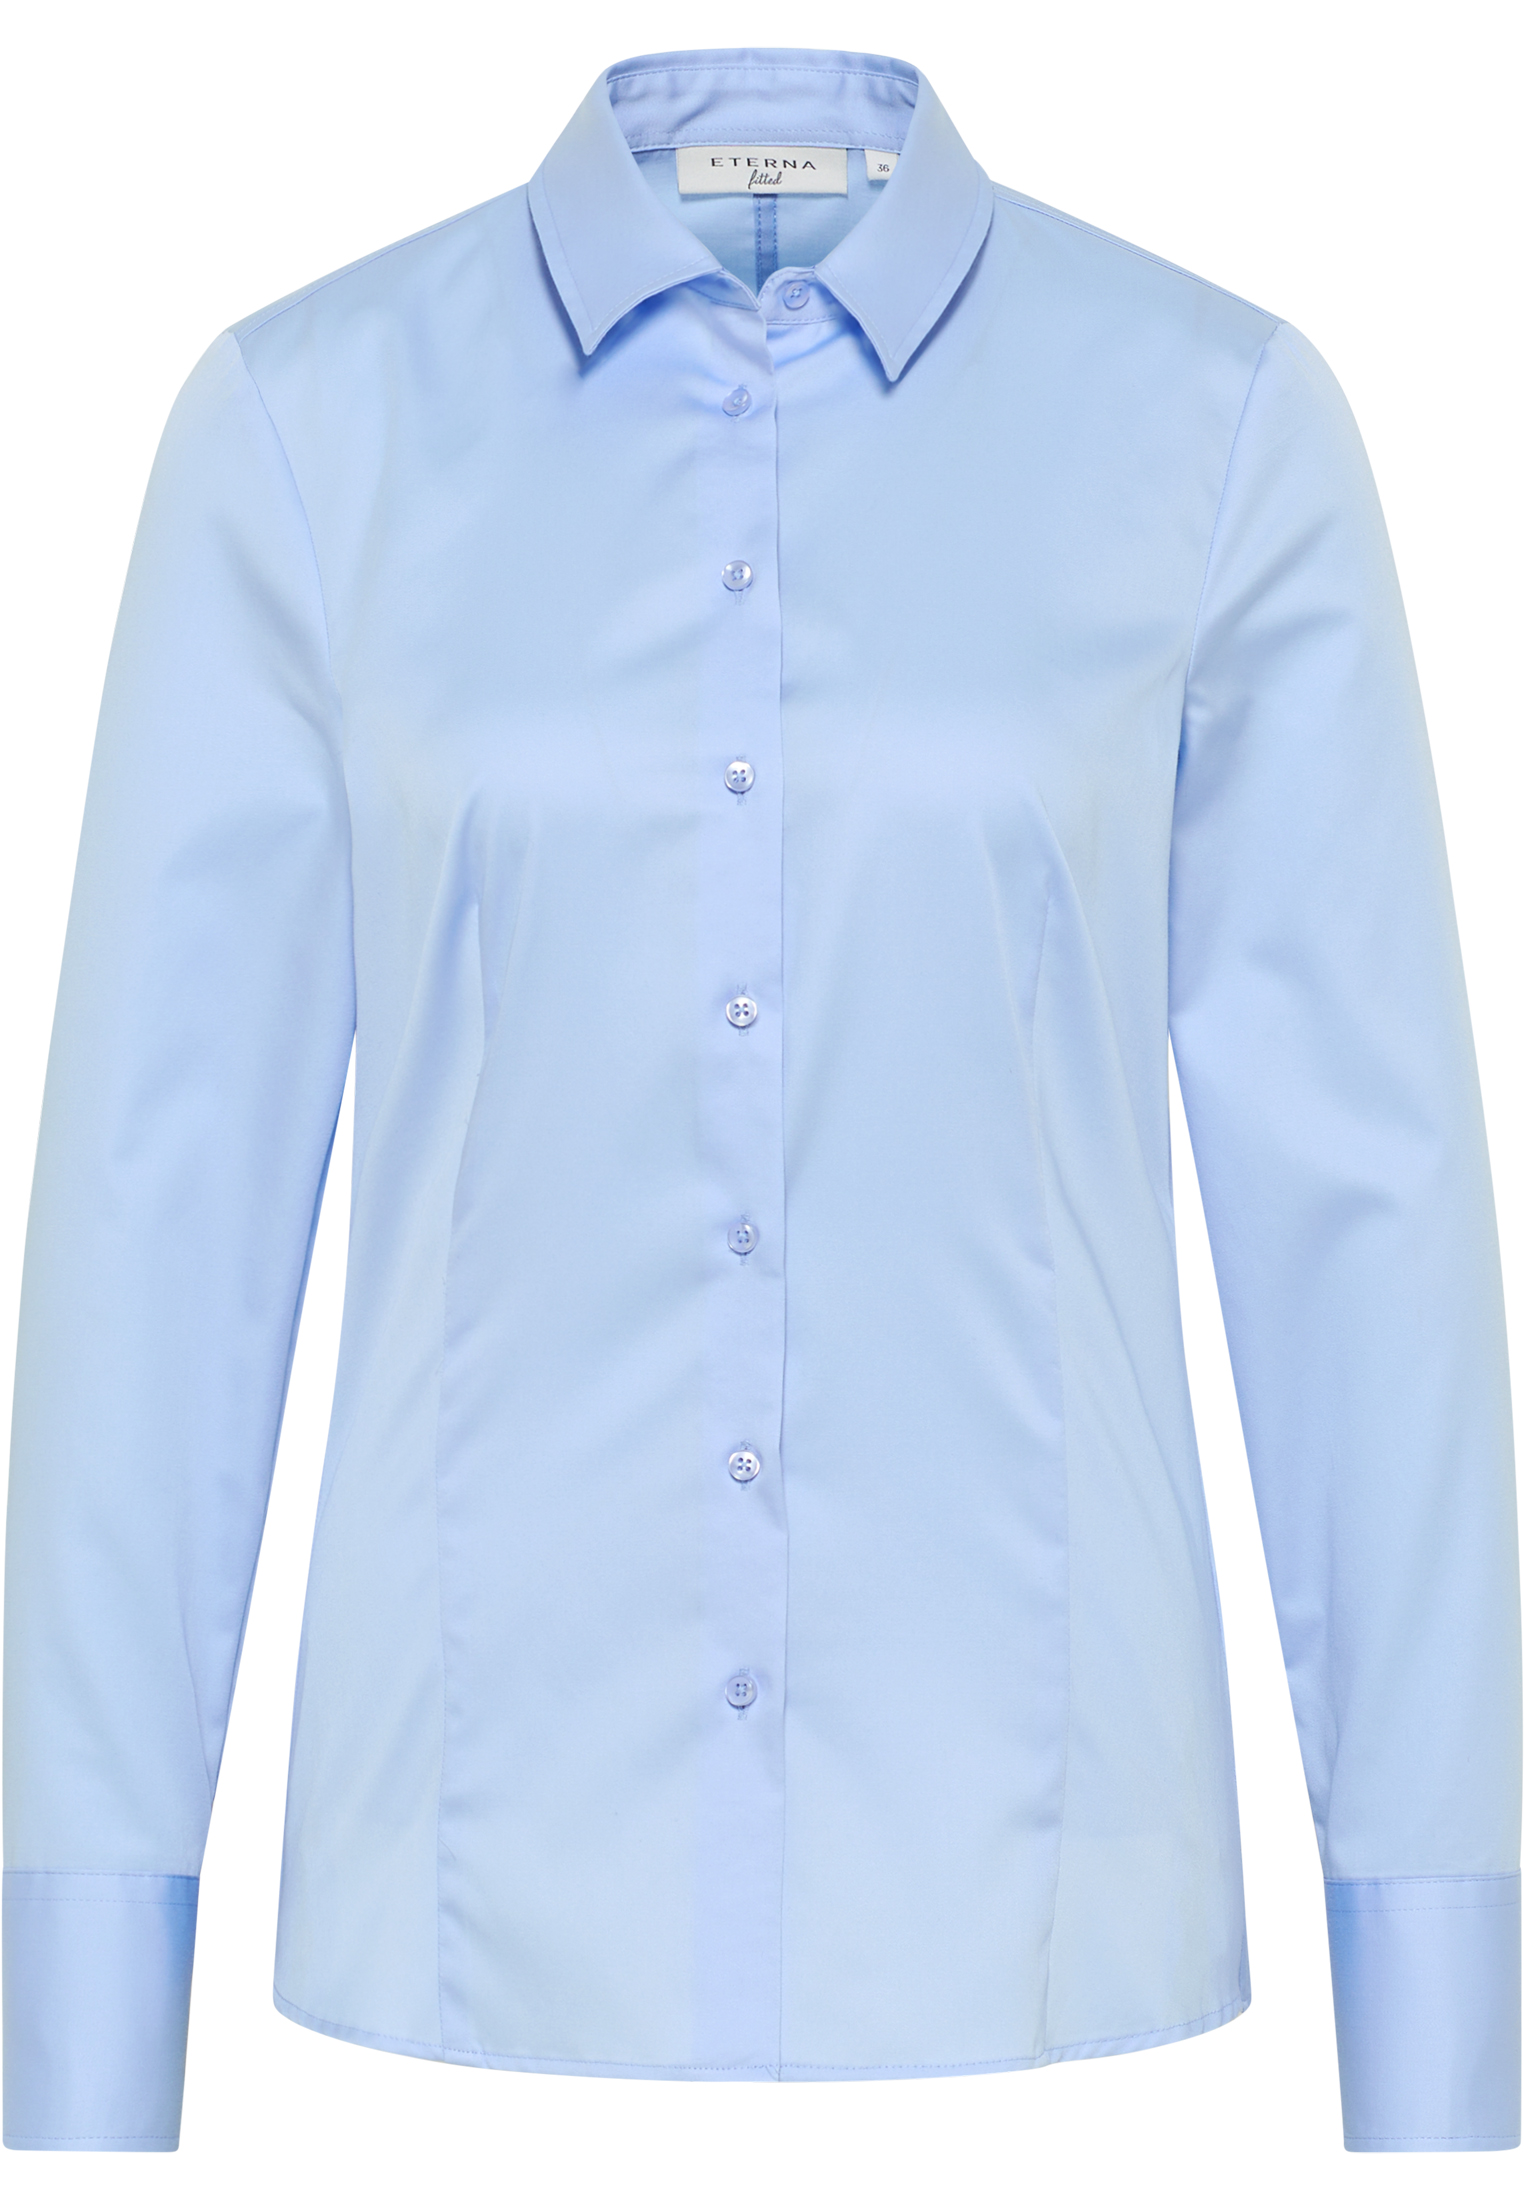 ETERNA shirt-blouse | light blue | 38 | long sleeve | 2BL04012-01-11-38-1/1